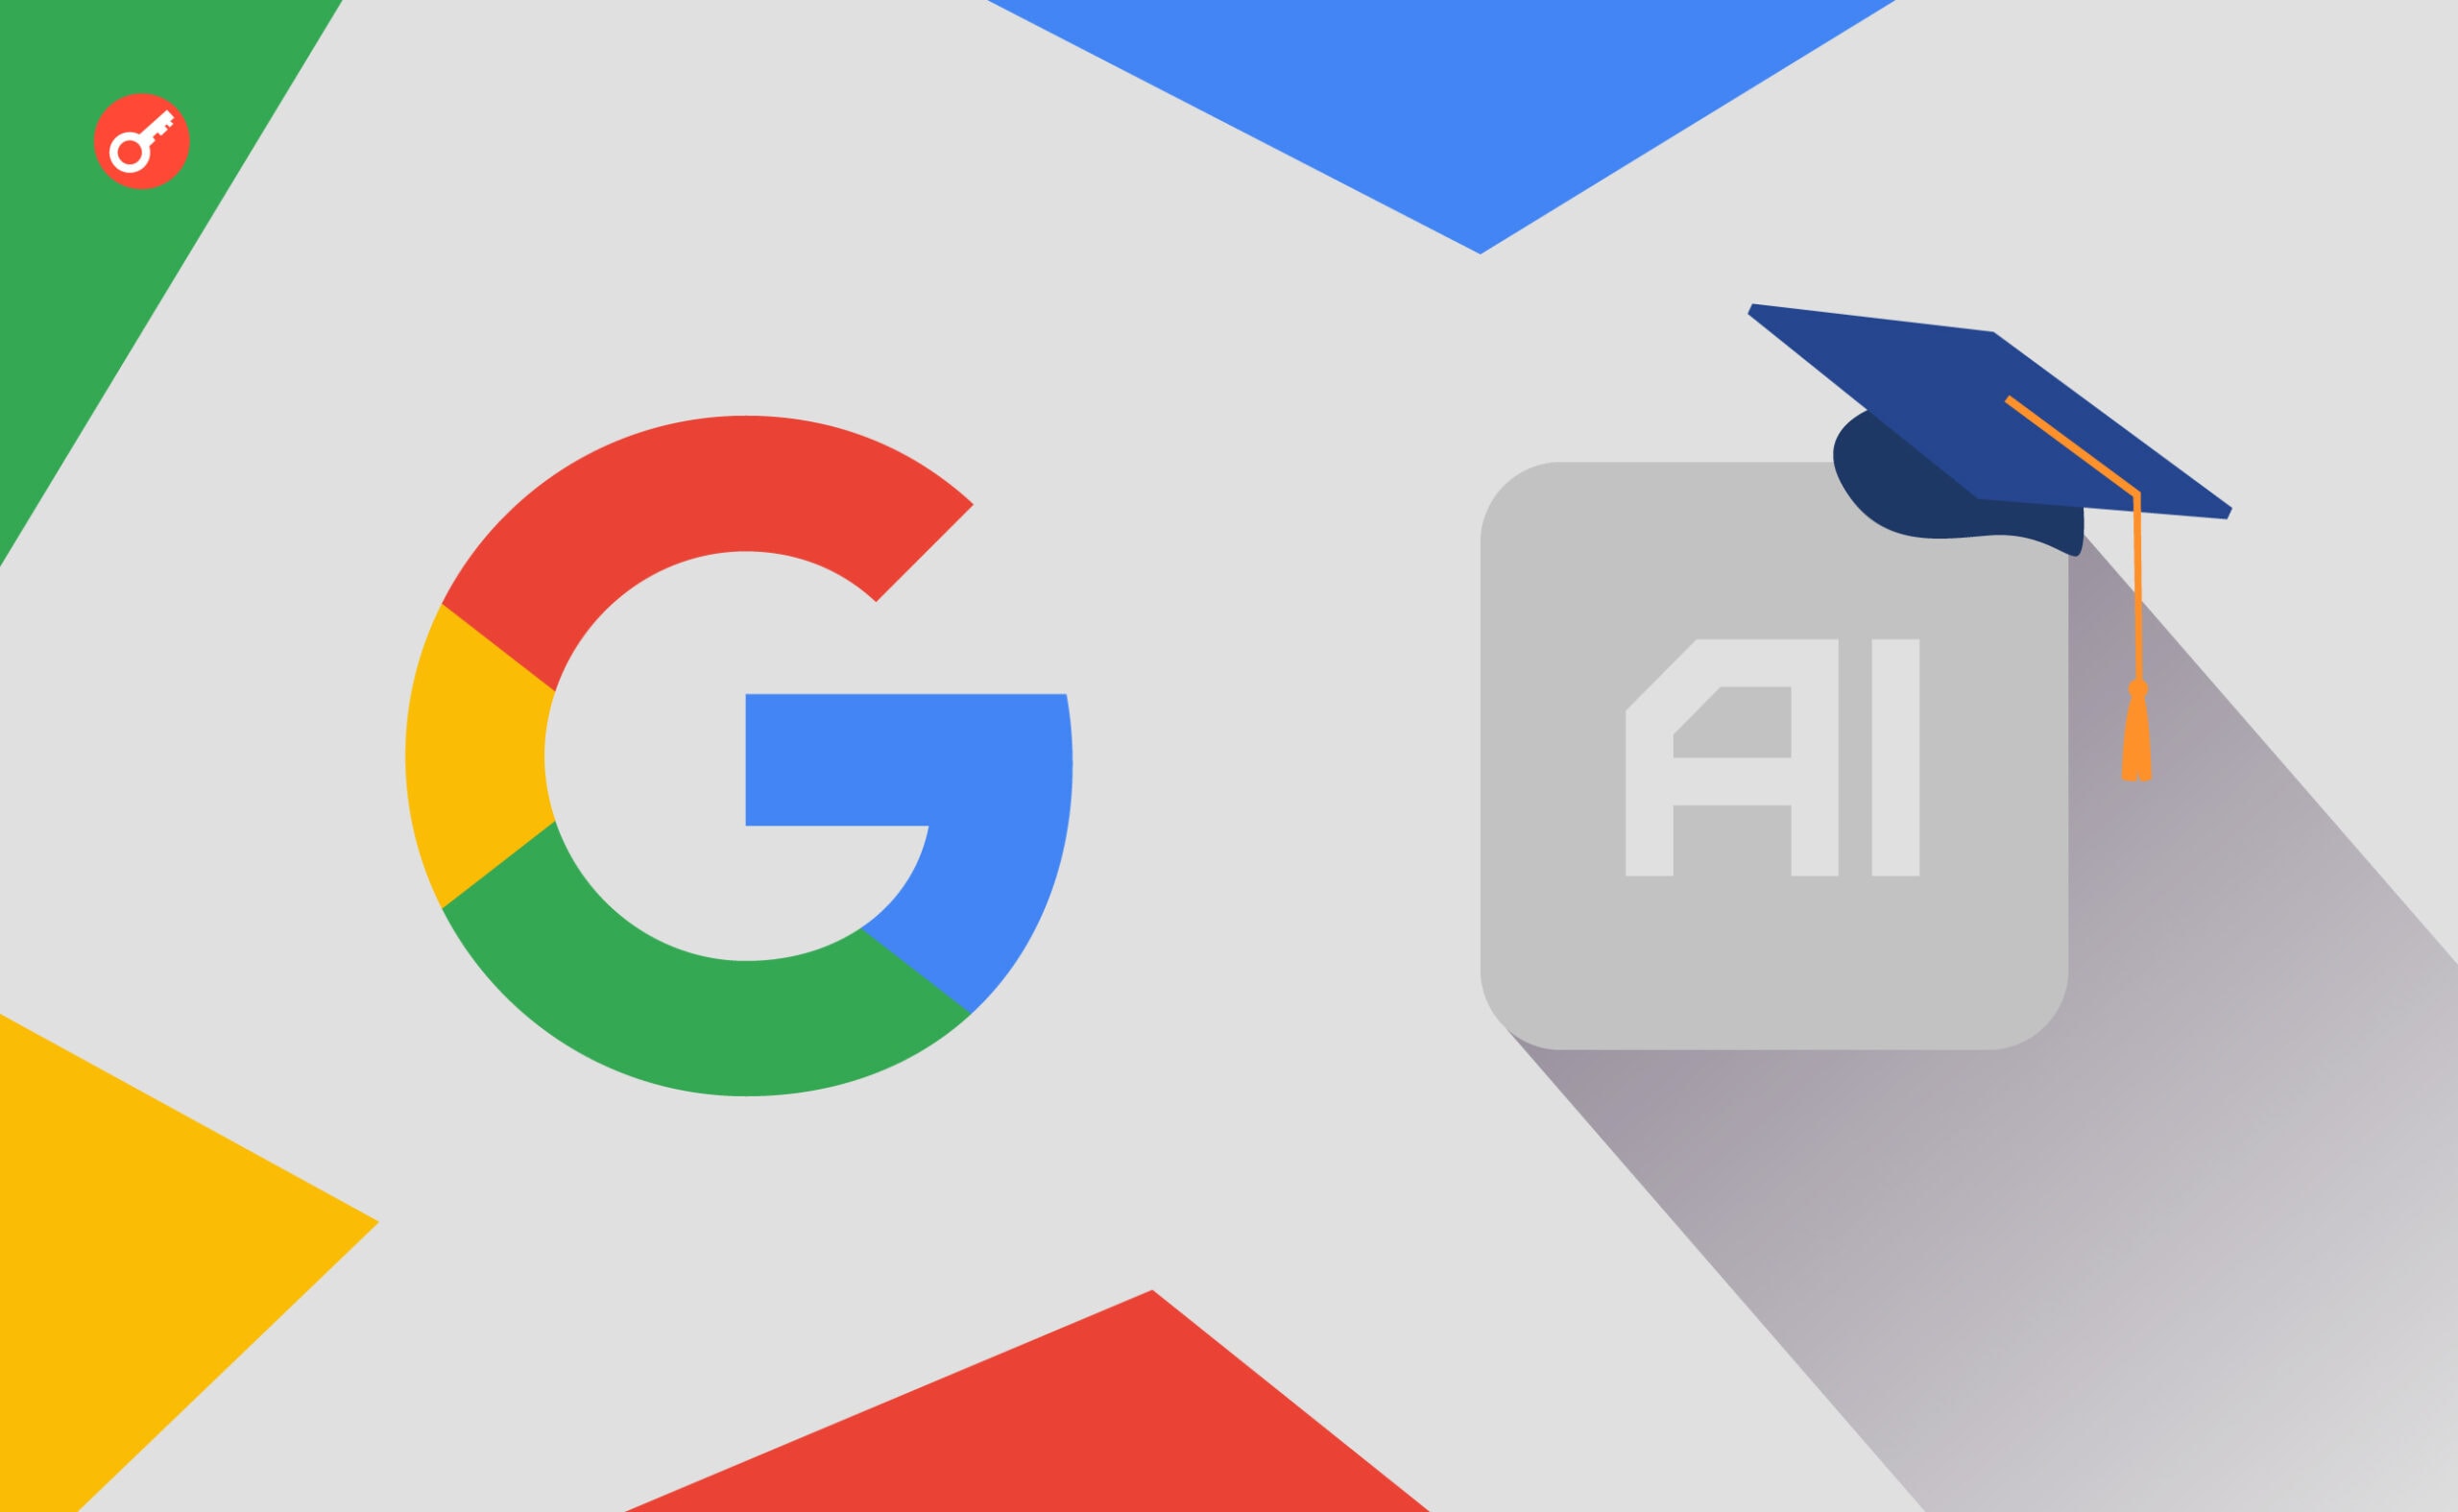 Google aktualizuje politykę prywatności dla szkoleń AI. Główny kolaż wiadomości.